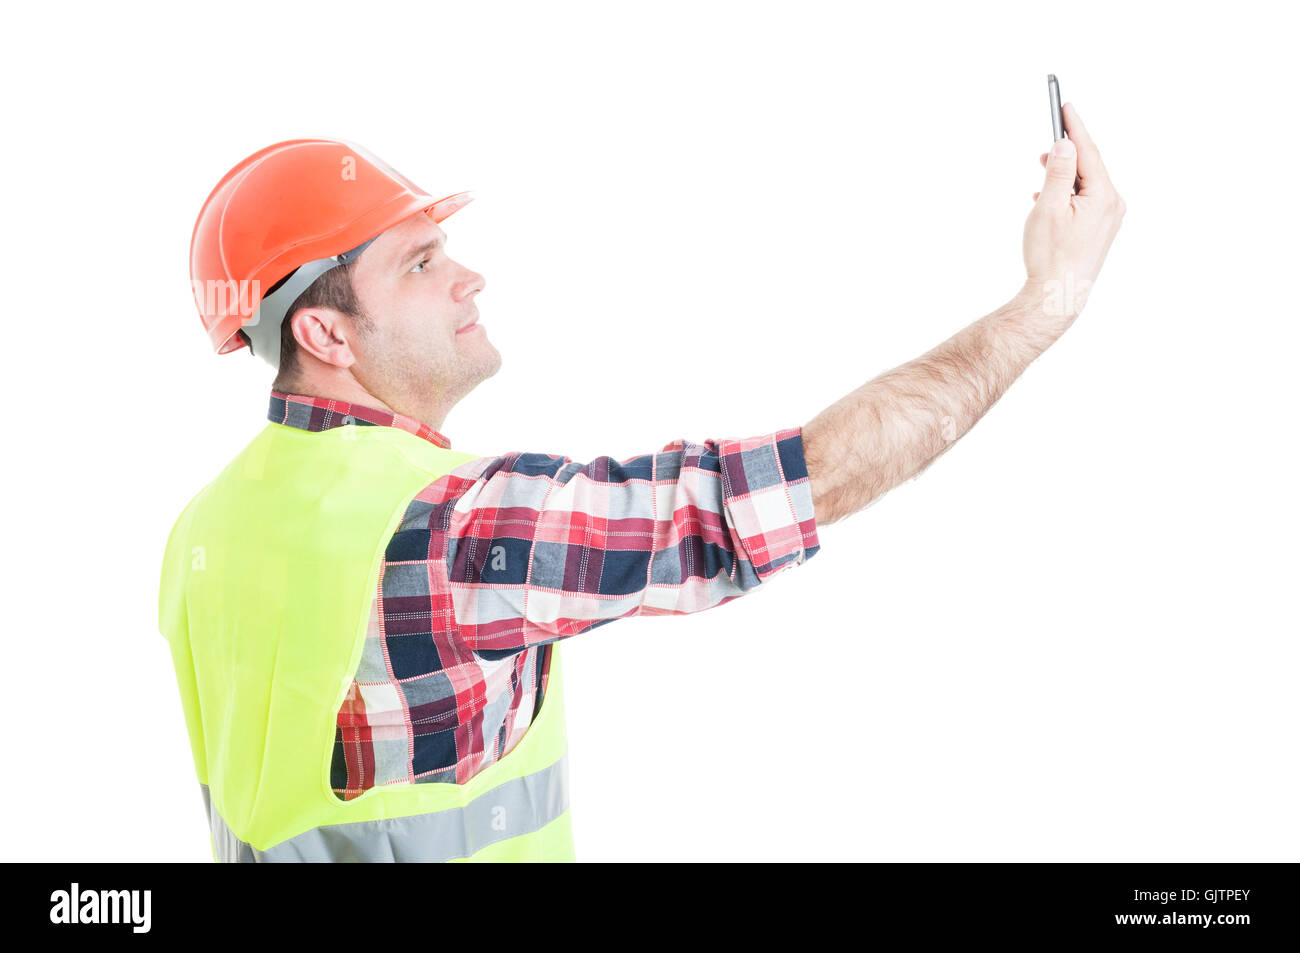 Prendre un constructeur attrayant avec le smartphone et selfies smiling isolated on white background studio Banque D'Images